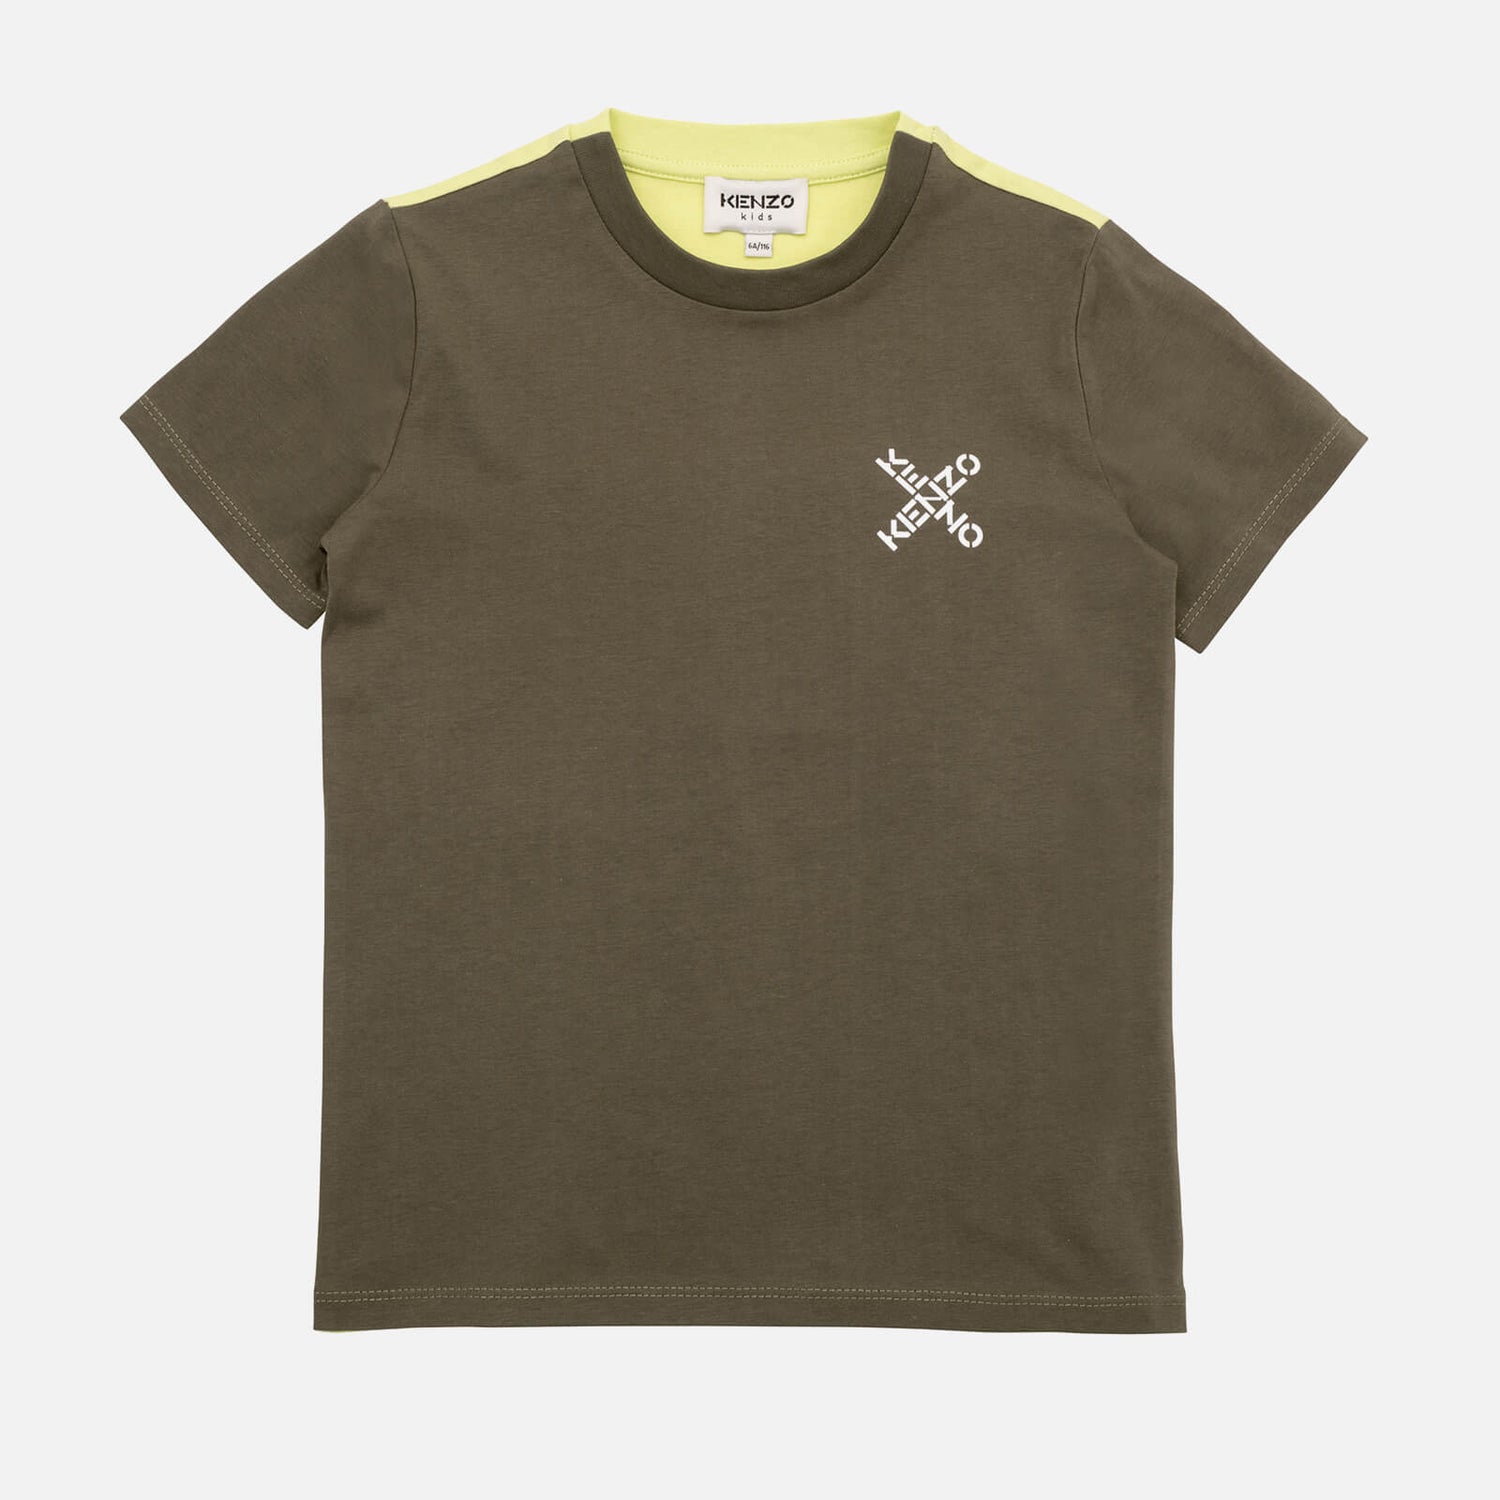 KENZO Short Sleeve T-Shirt - 8 Years